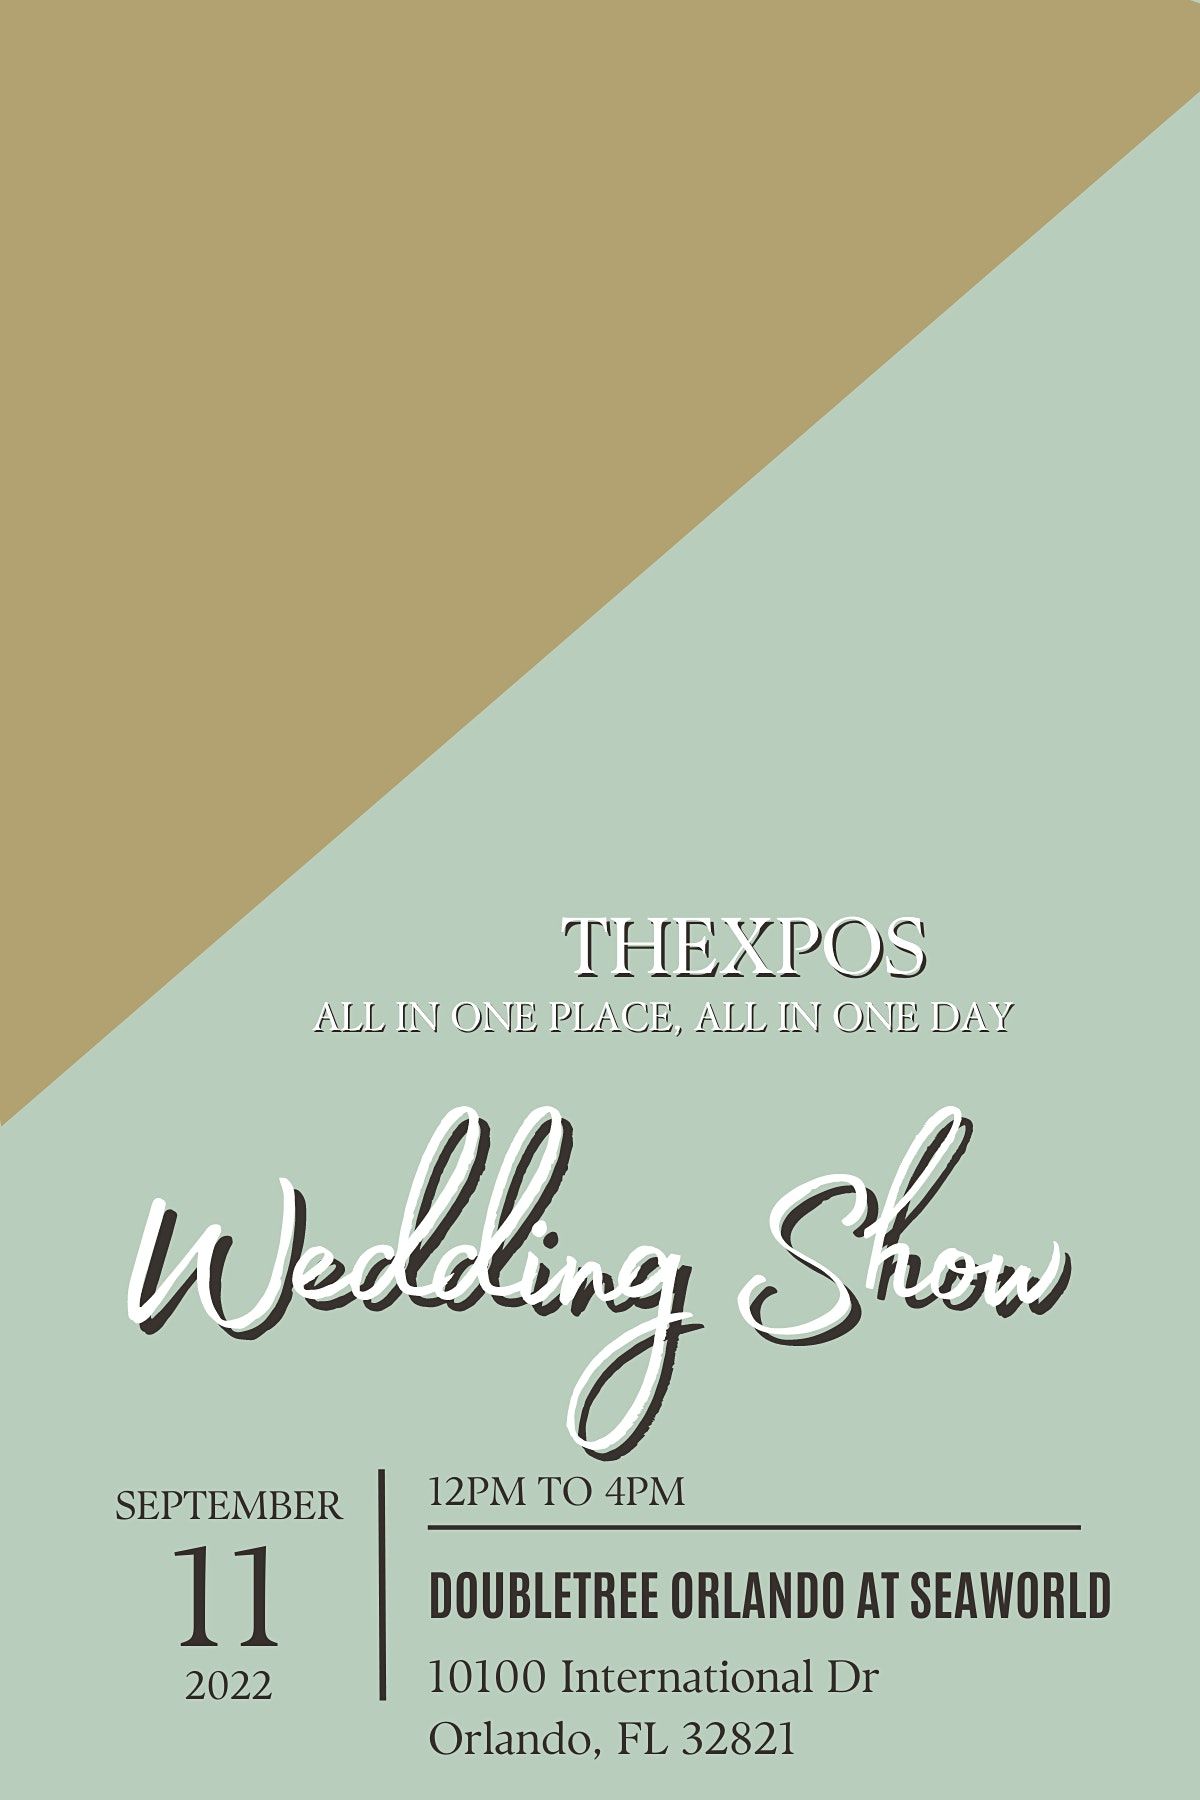 TheXpos Wedding Expo & Bridal show